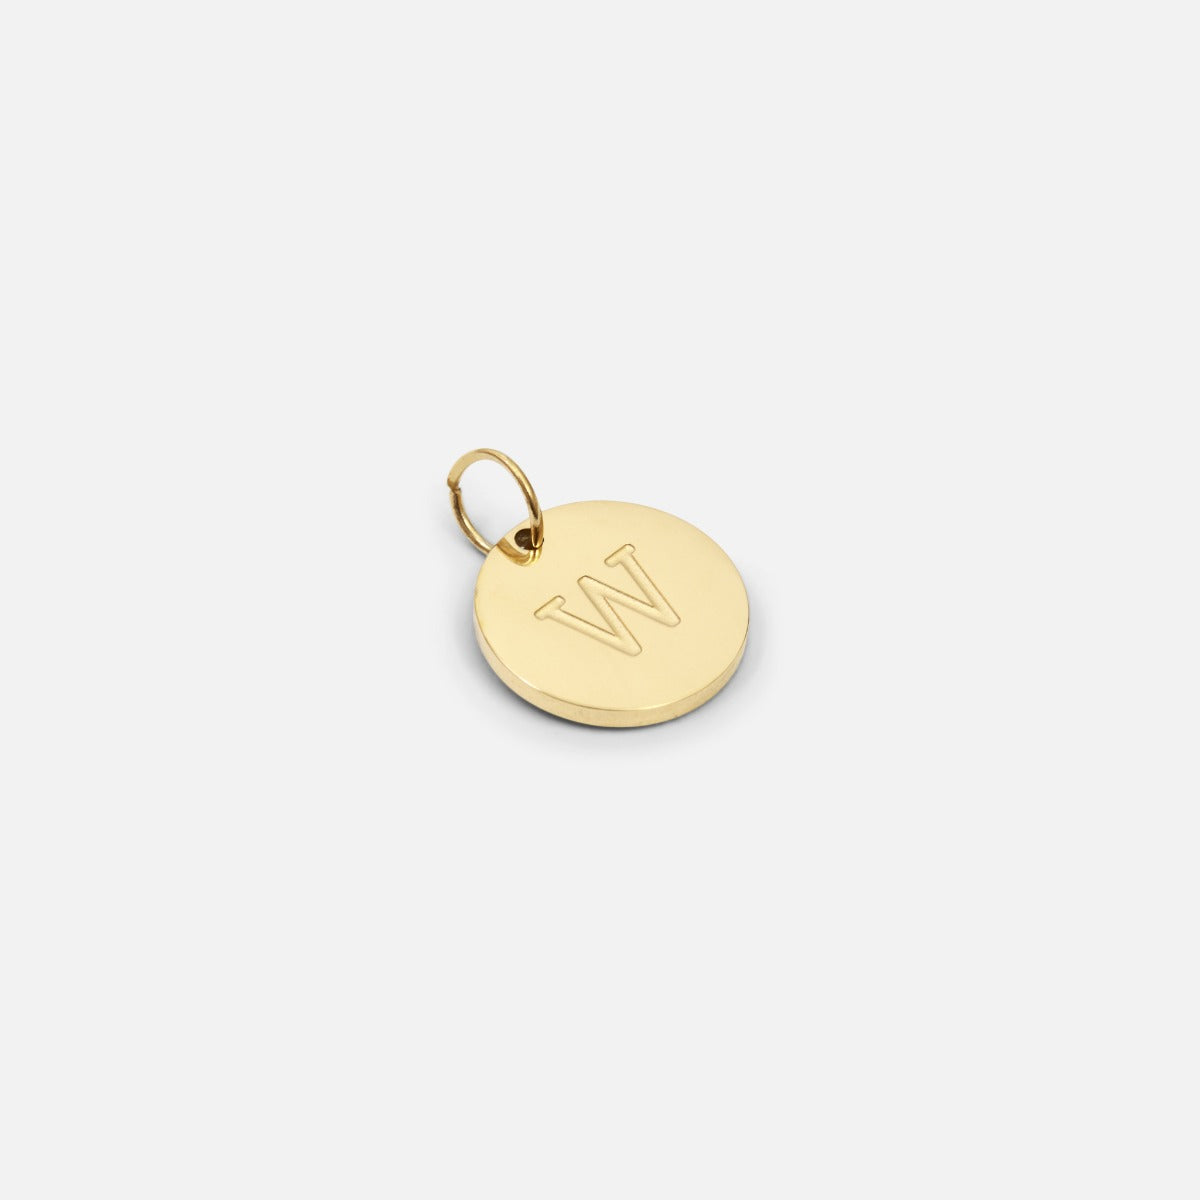 Petite breloque dorée symbolique gravée lettre de l’alphabet "w"